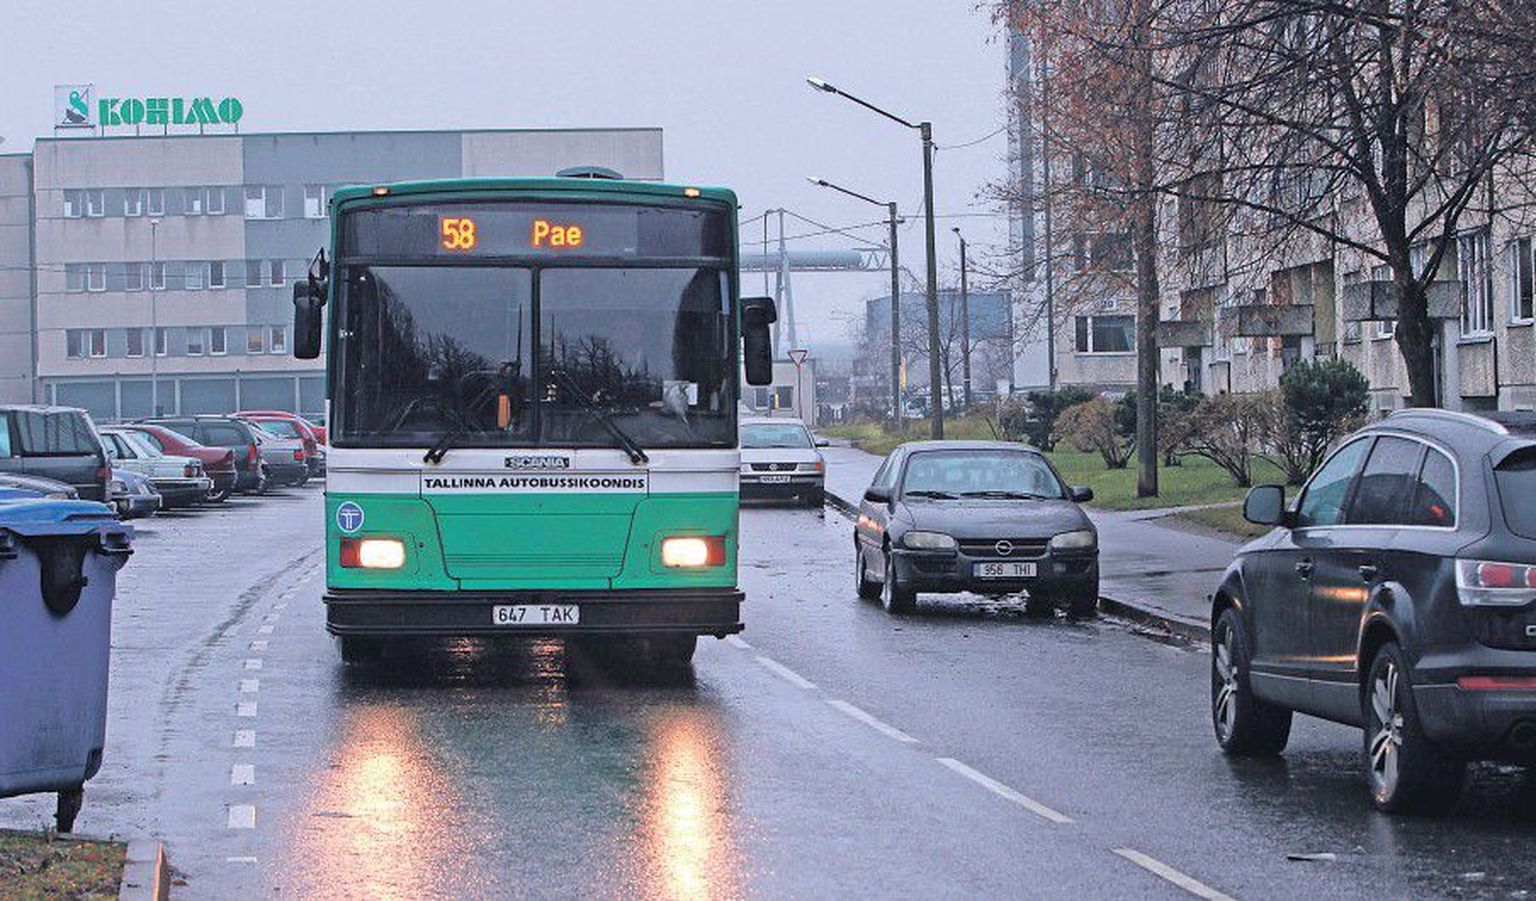 На улице Паэкааре, 70, 72 и 74 автомобили припаркованы таким образом, что двустороннее движение превращается в одностороннее, и 58-й автобус вынужден маневрировать между автомобилями. С 1 декабря автобус частично изменит путь своего следования.